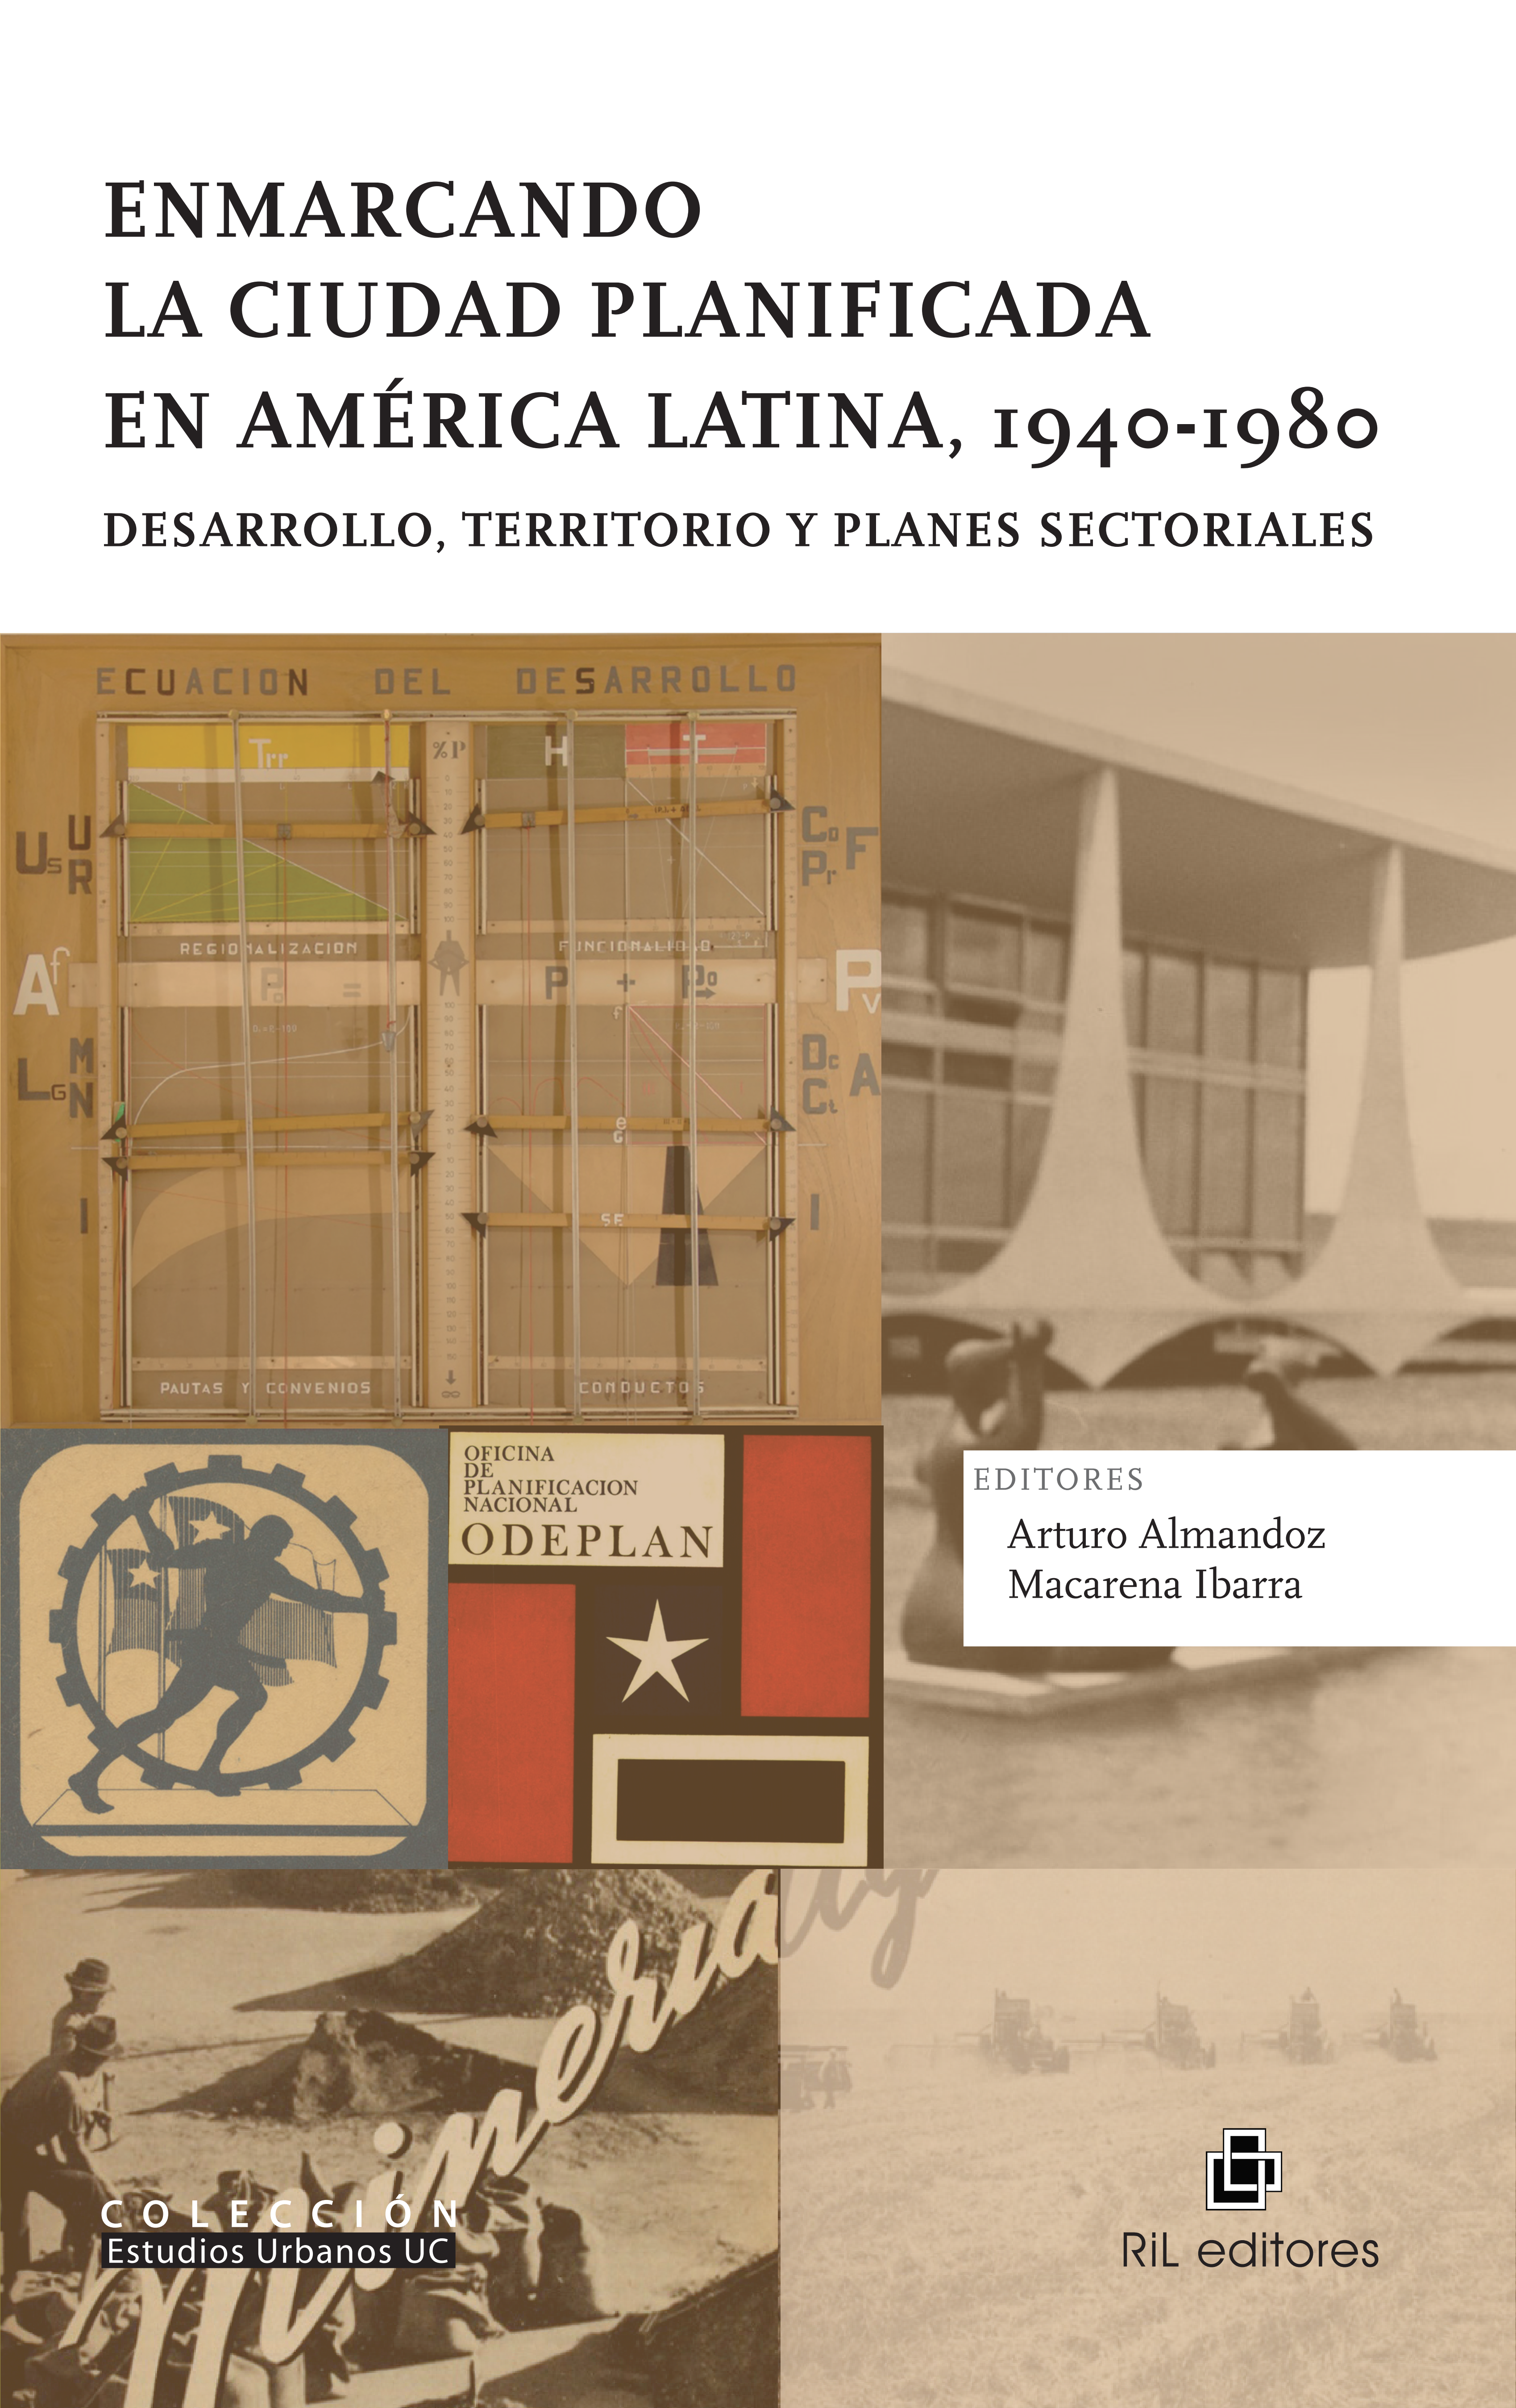 Enmarcando la ciudad planificada en América Latina, 1940-1980. Desarrollo, territorio y planes sectoriales